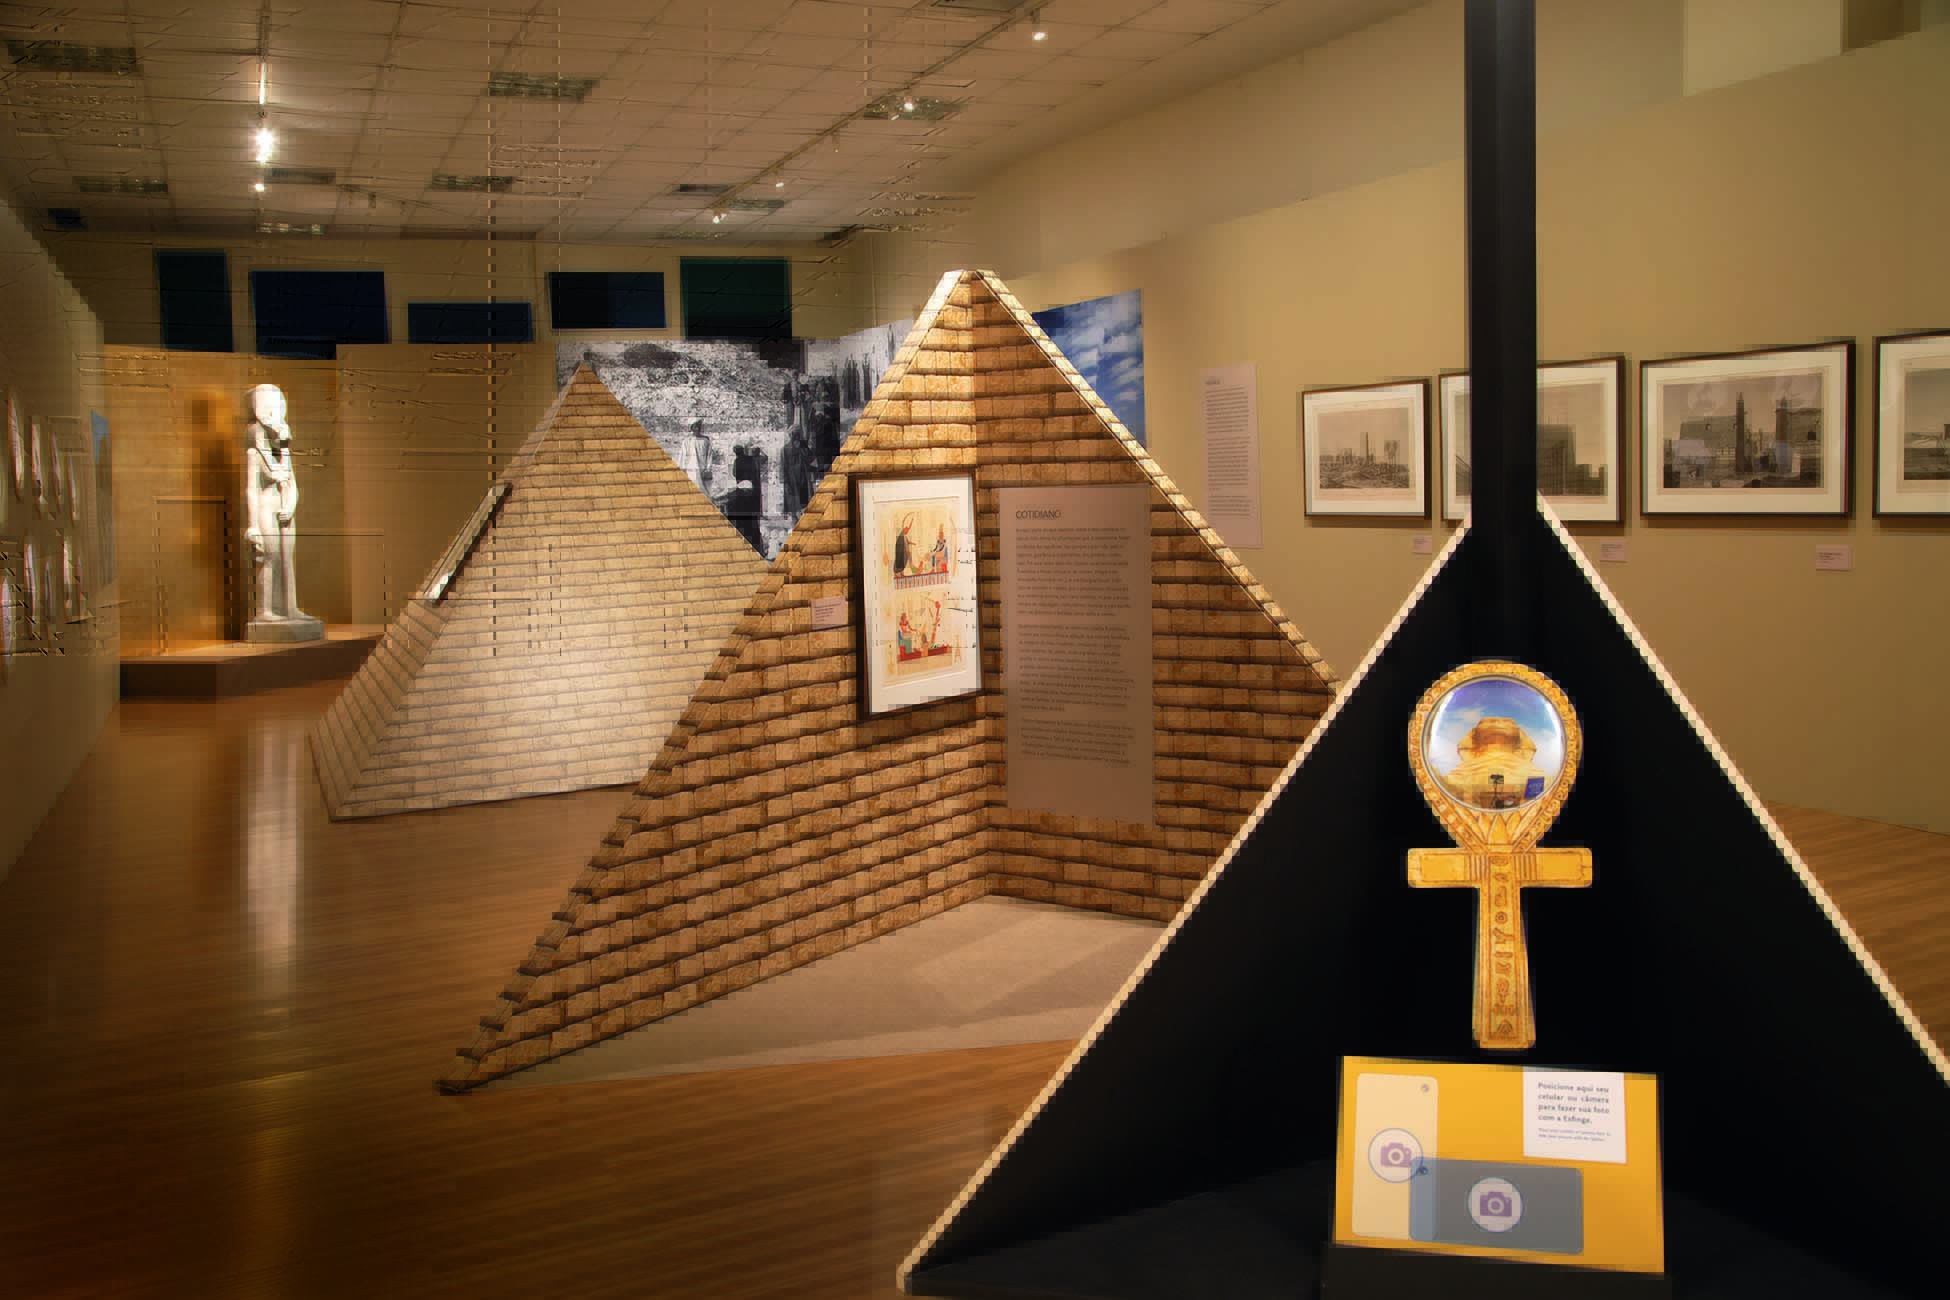 Imagem mostra sala iluminada com representações de pirâmides ao centro.